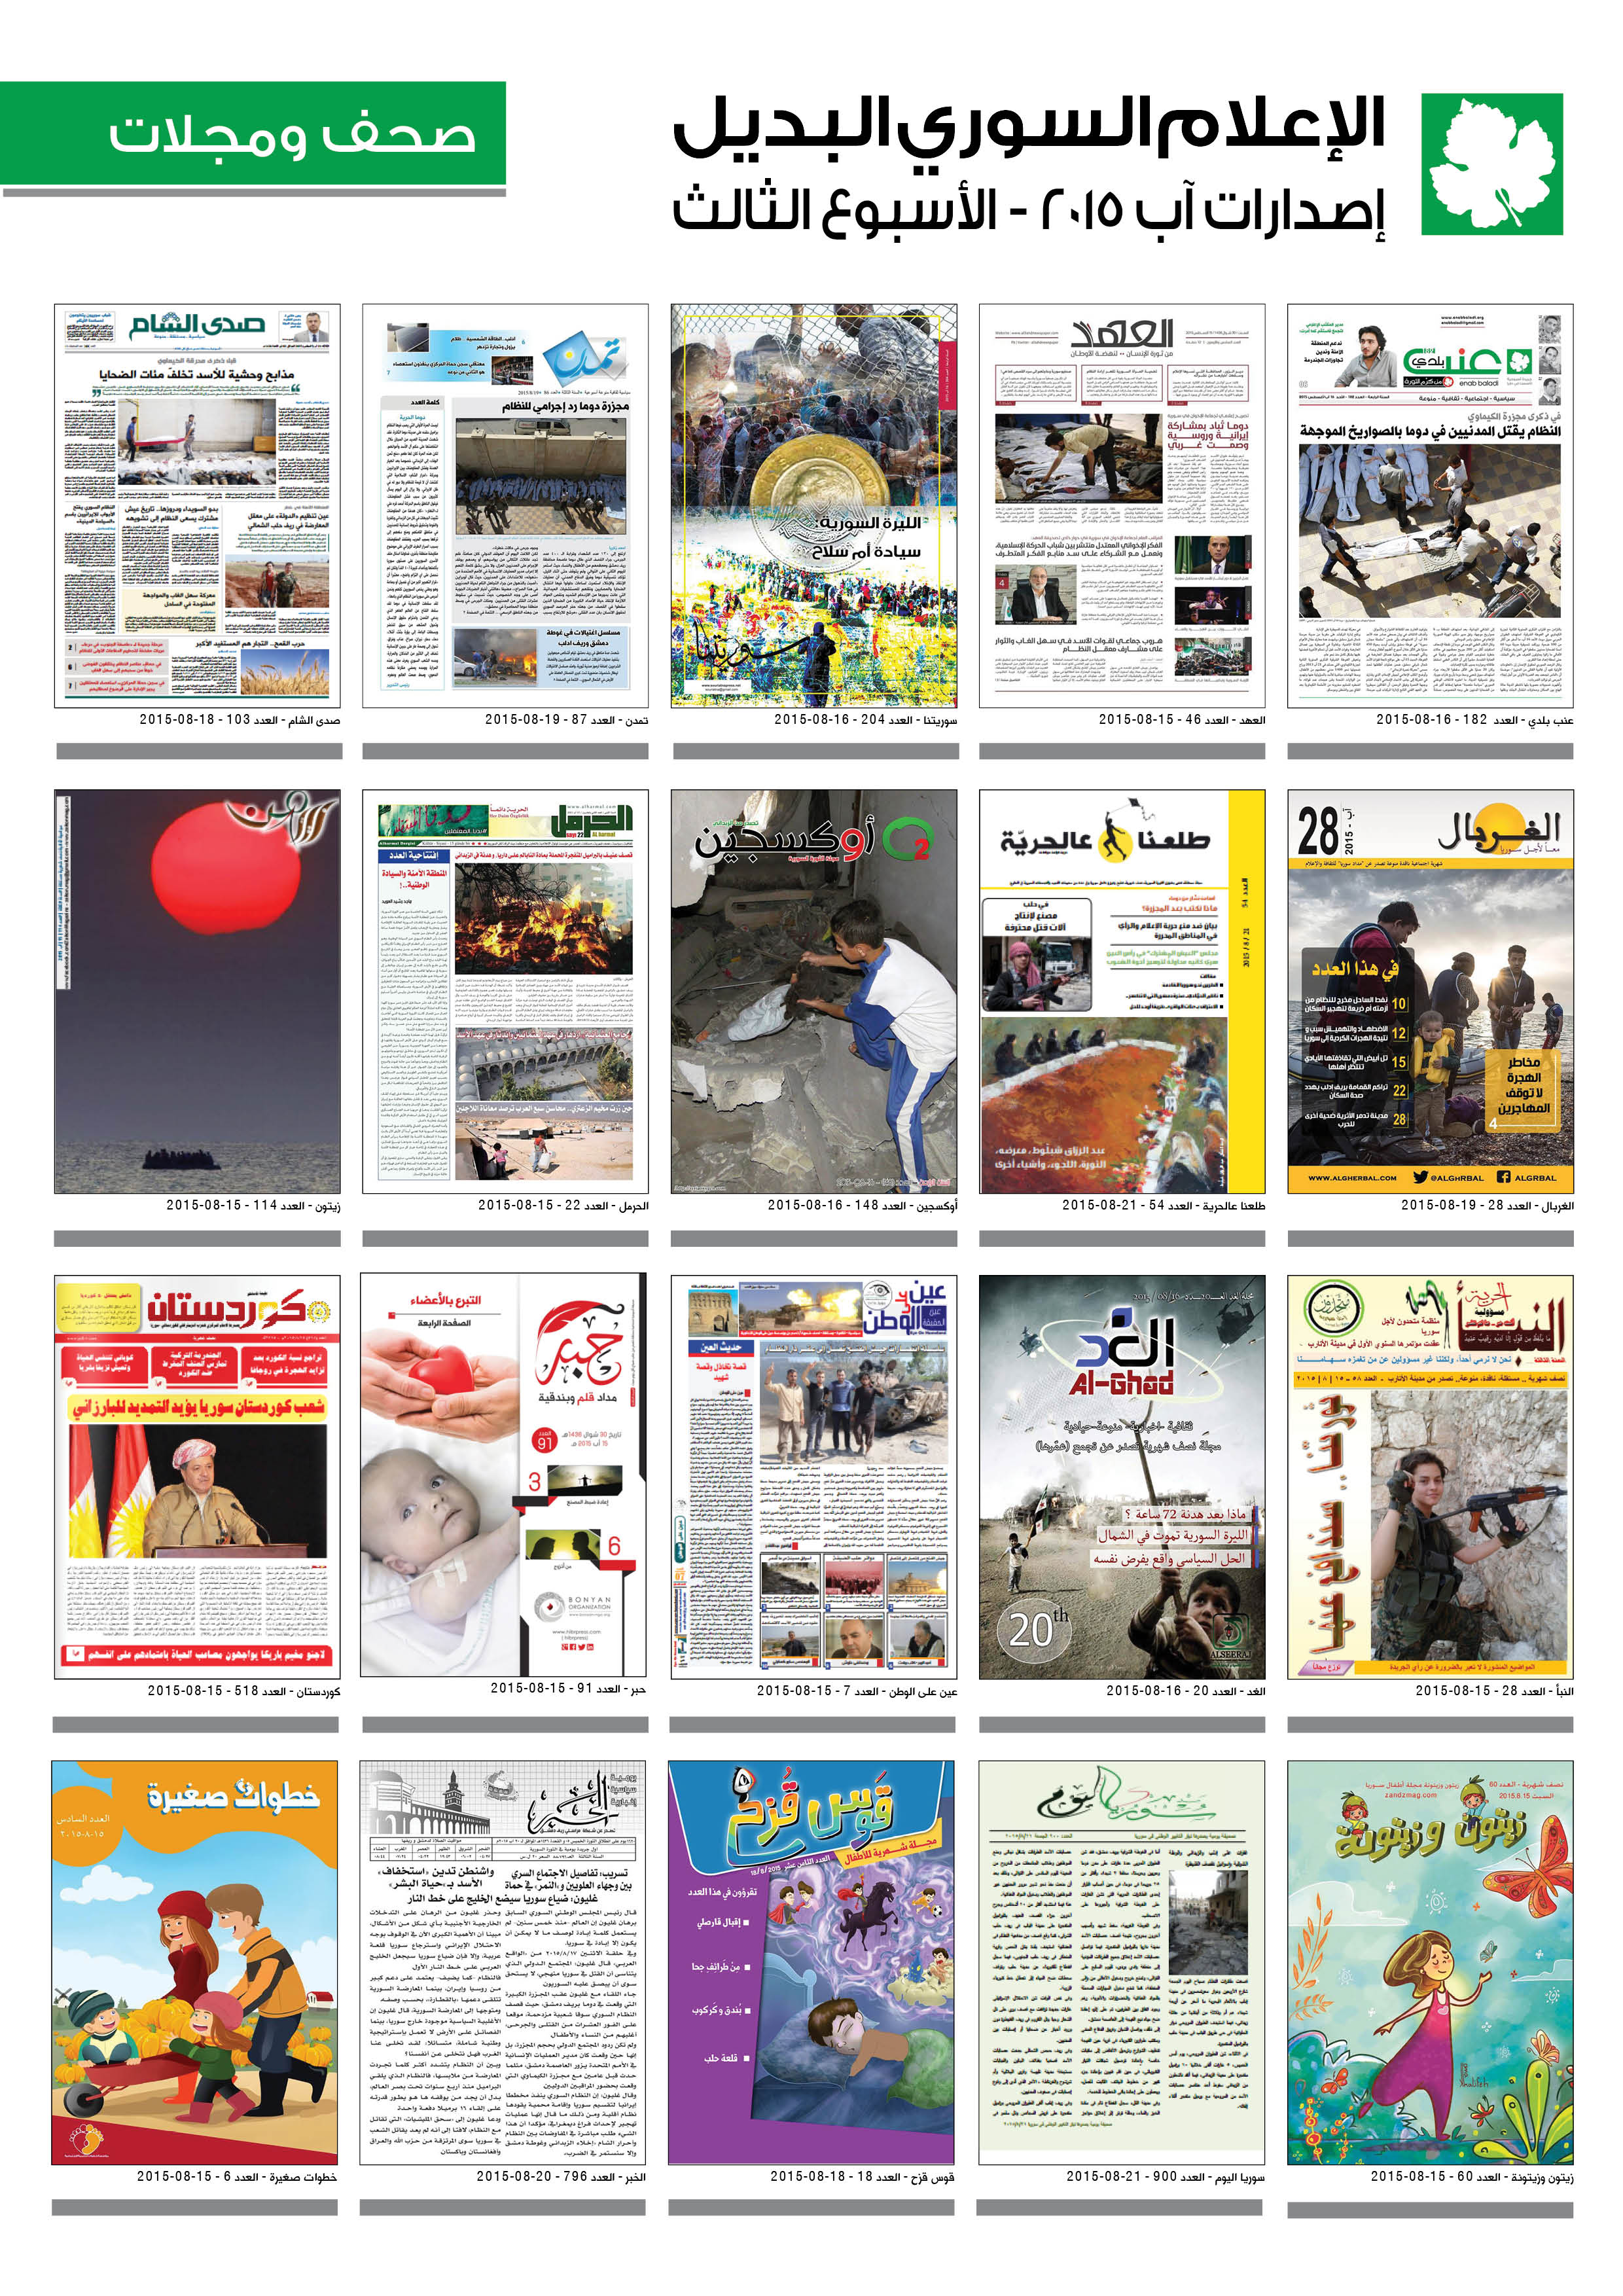 الإعلام السوري البديل - صحف ومجلات - آب 2015  (الأسبوع الثالث)